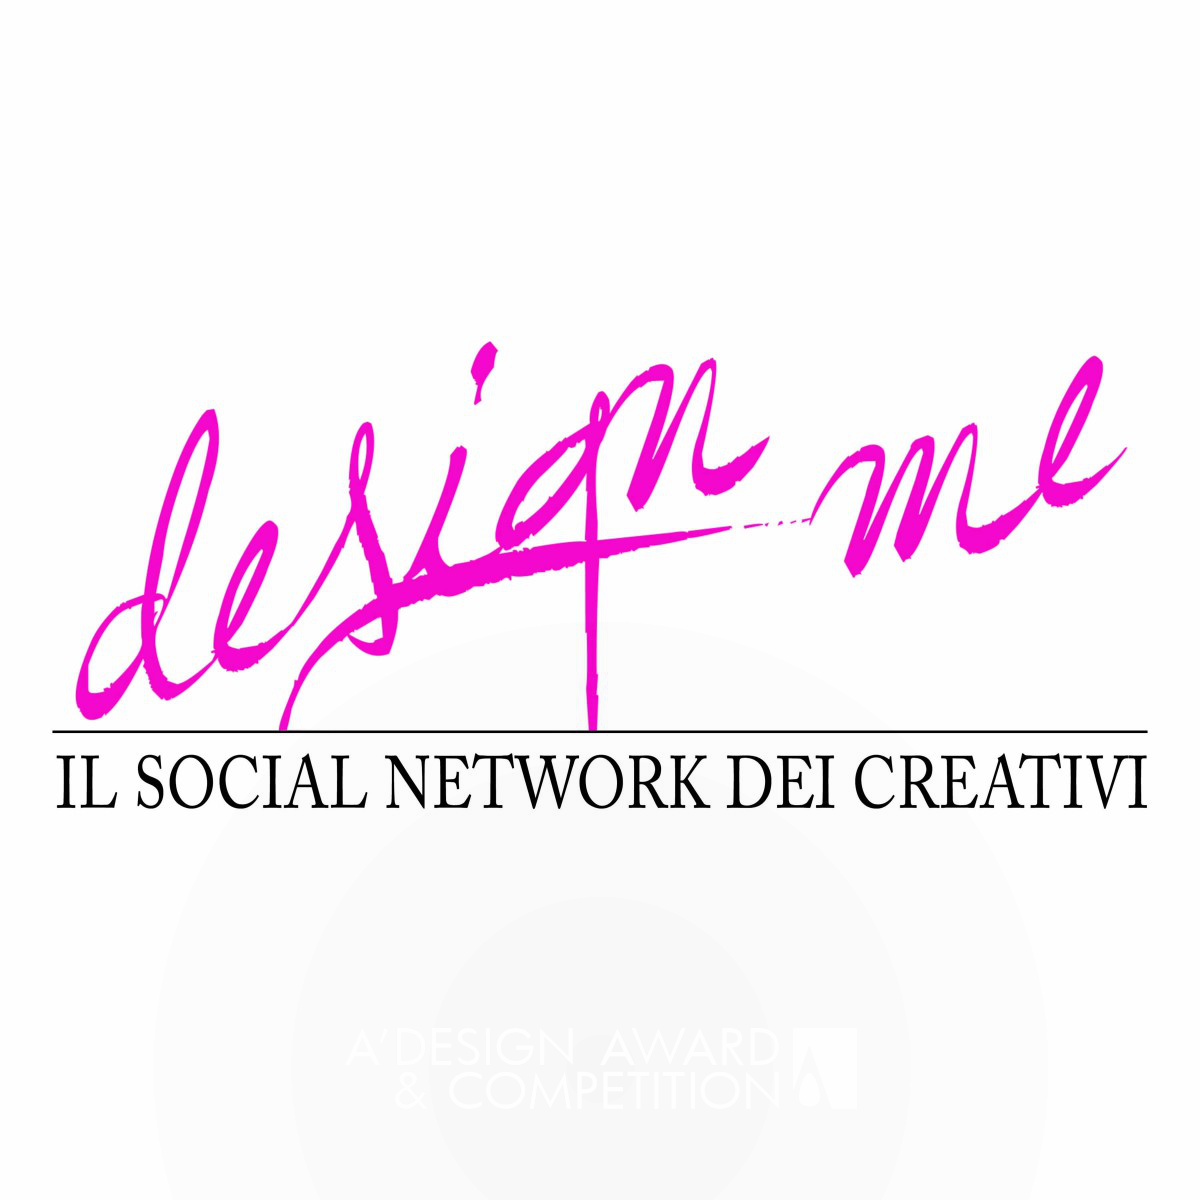 Design Me